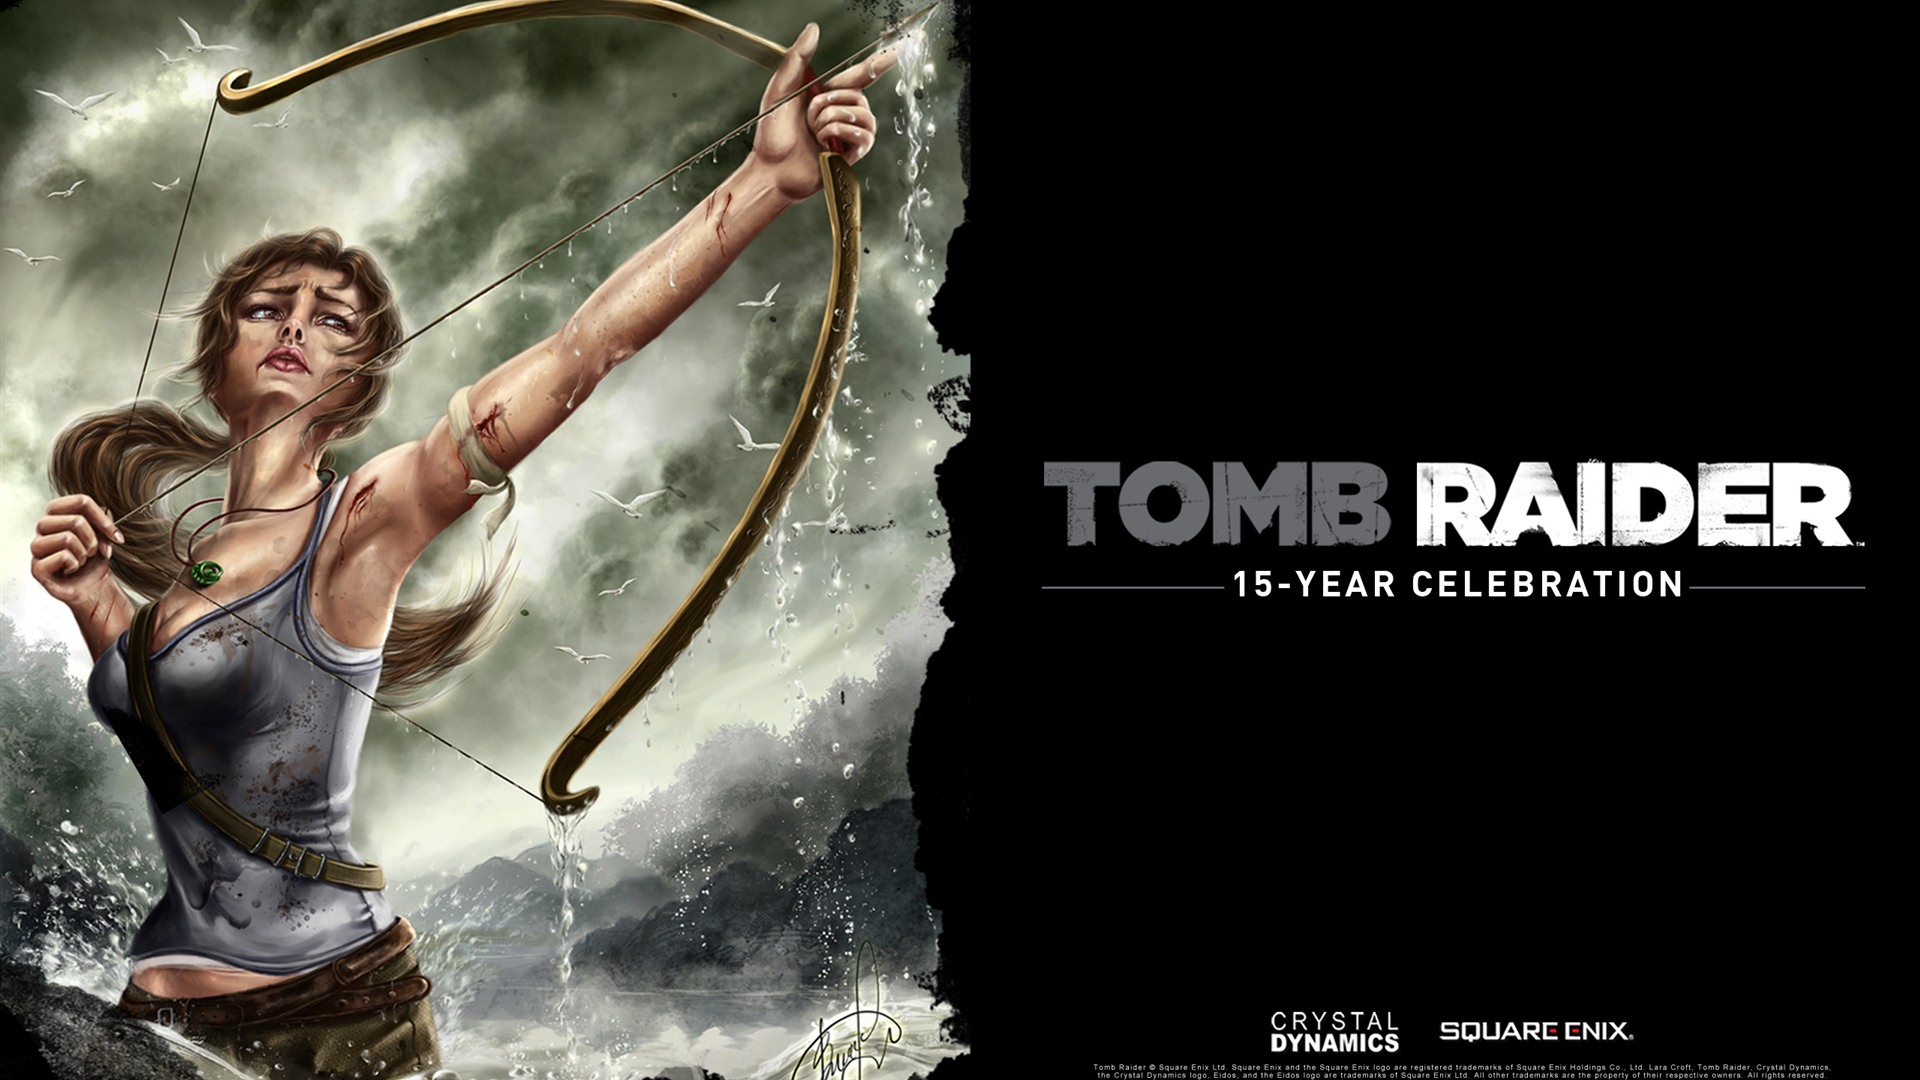 Tomb Raider 15-Year Celebration 古墓丽影15周年纪念版 高清壁纸5 - 1920x1080